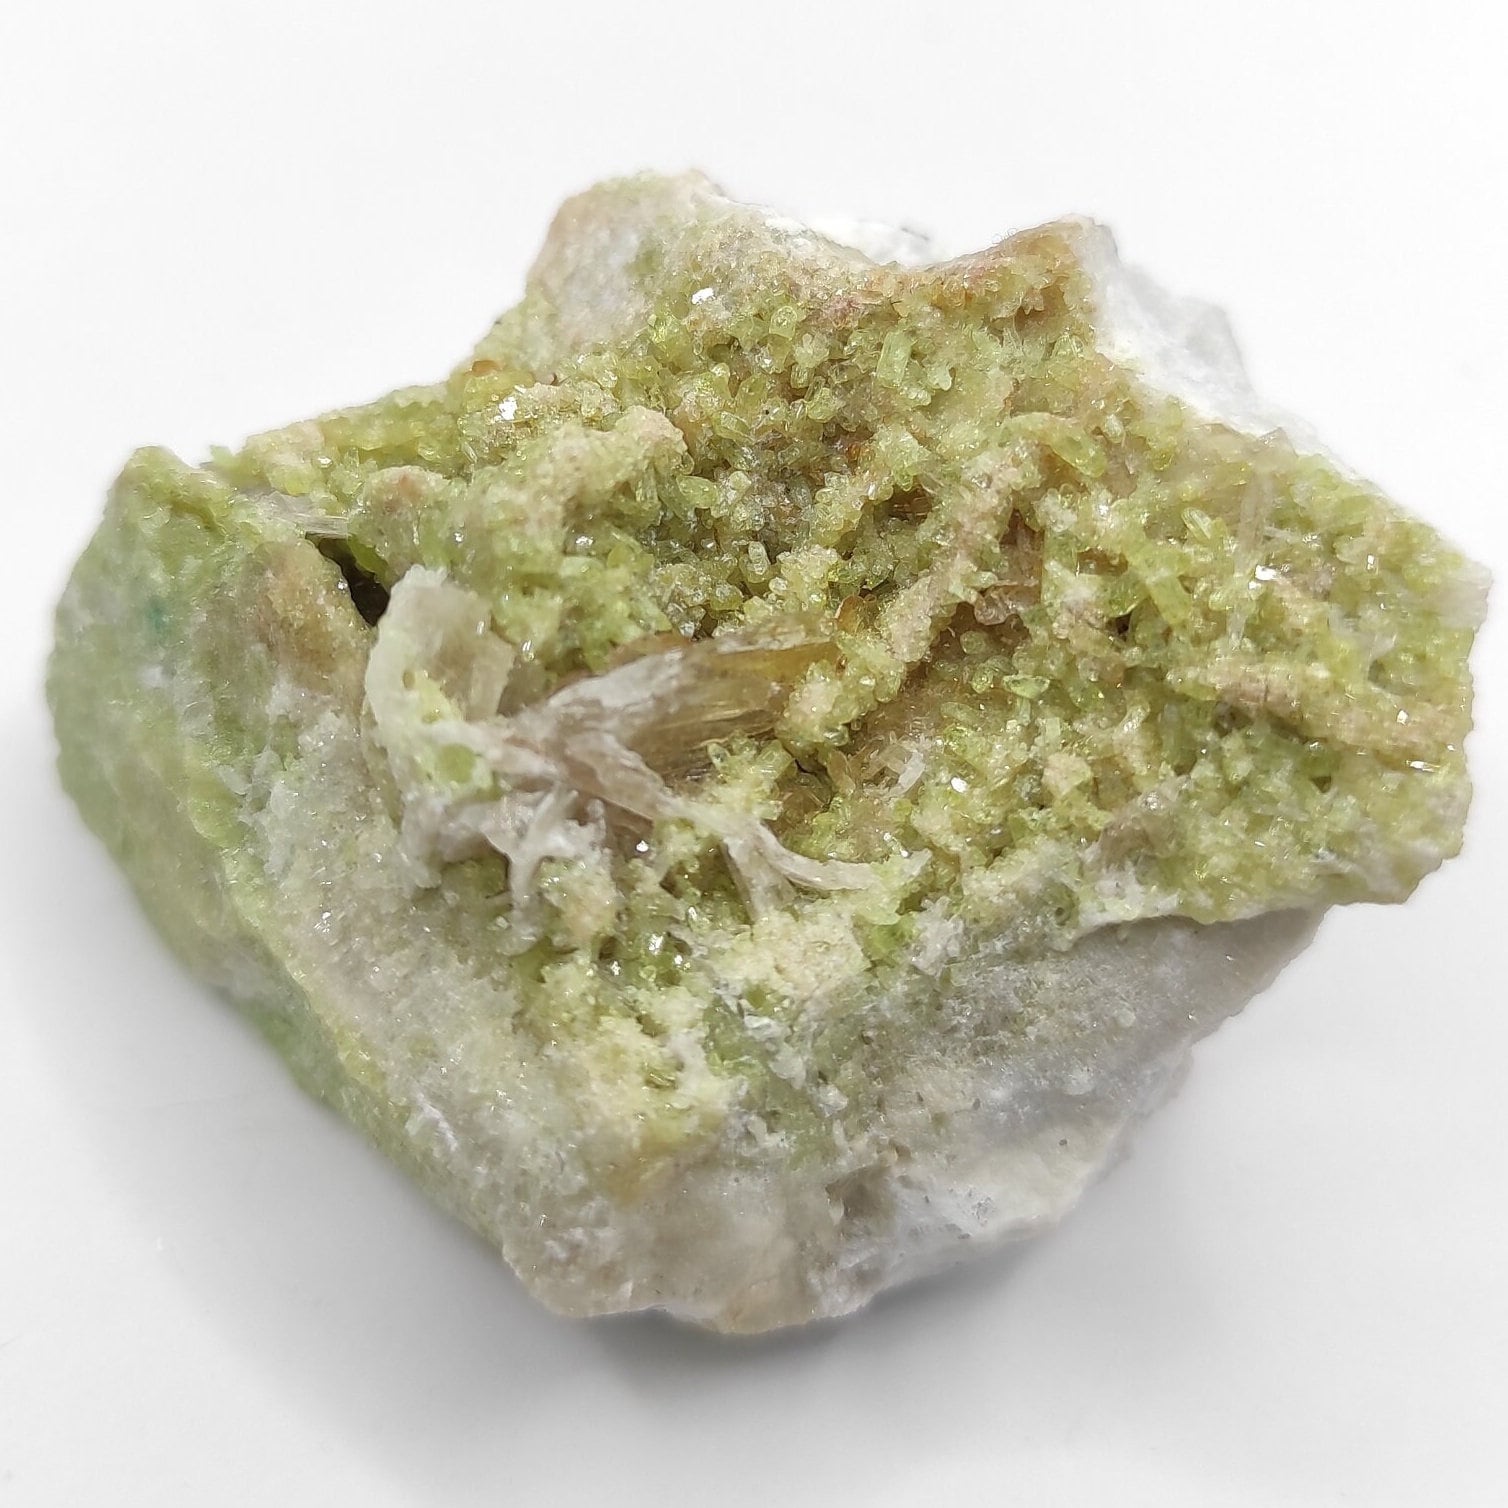 2016 Find - 80g Vesuvianite with Diopside - Mineral Specimen - Vesuvianite Crystal - Jeffrey Mine, Asbestos, Quebec - Canadian Minerals